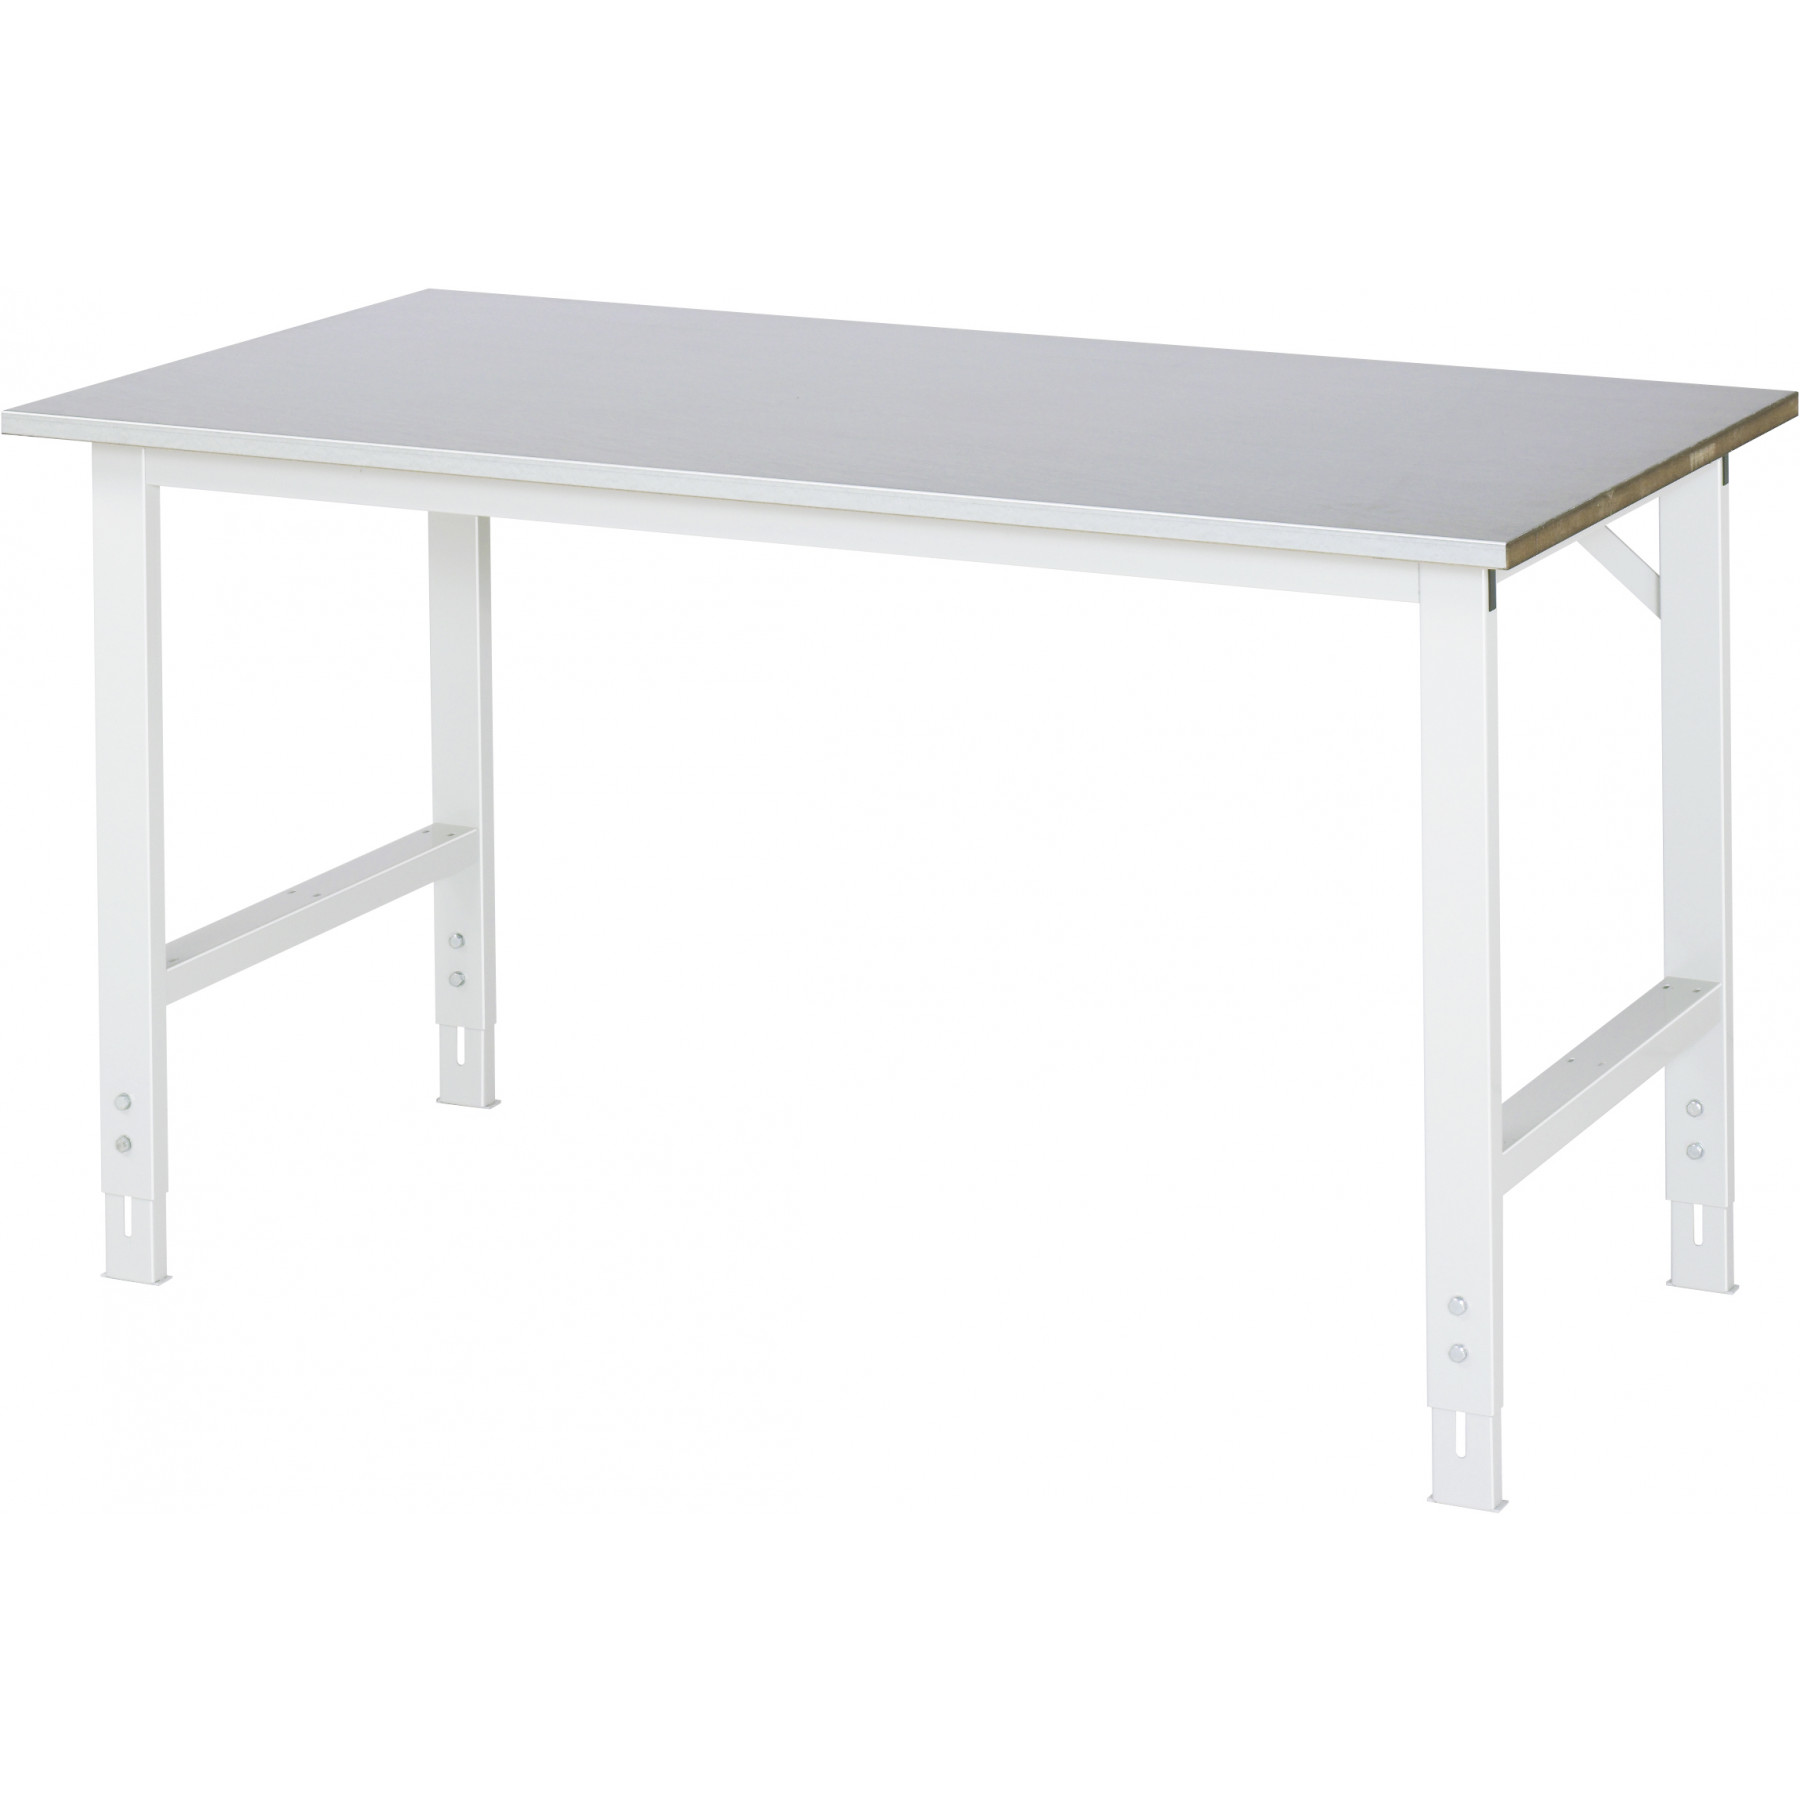 Werktafel met werkblad met staalplaat toplaag, serie Tom 800 mm